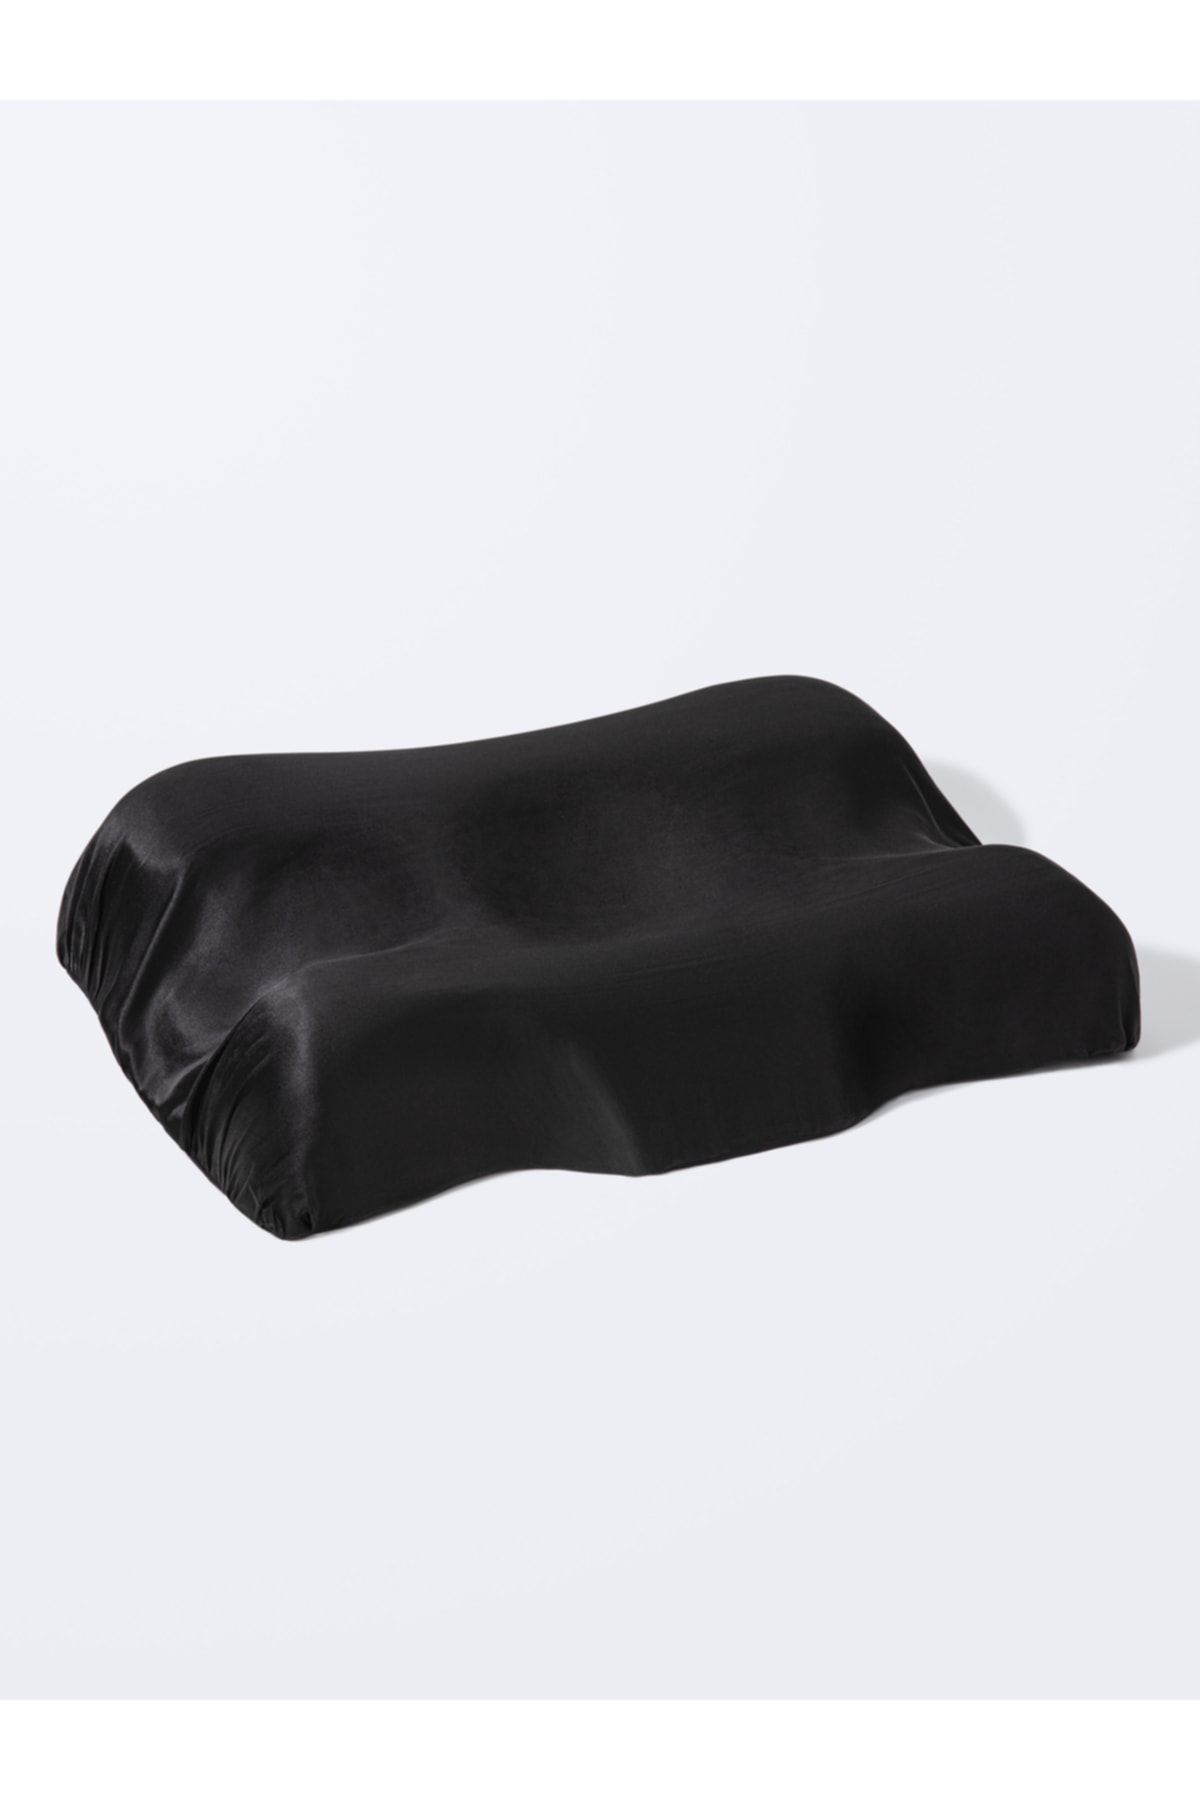 Beauty Pillow %100 Ipek Yastık Kılıfı Siyah Renk ( Yastığa Uygun)